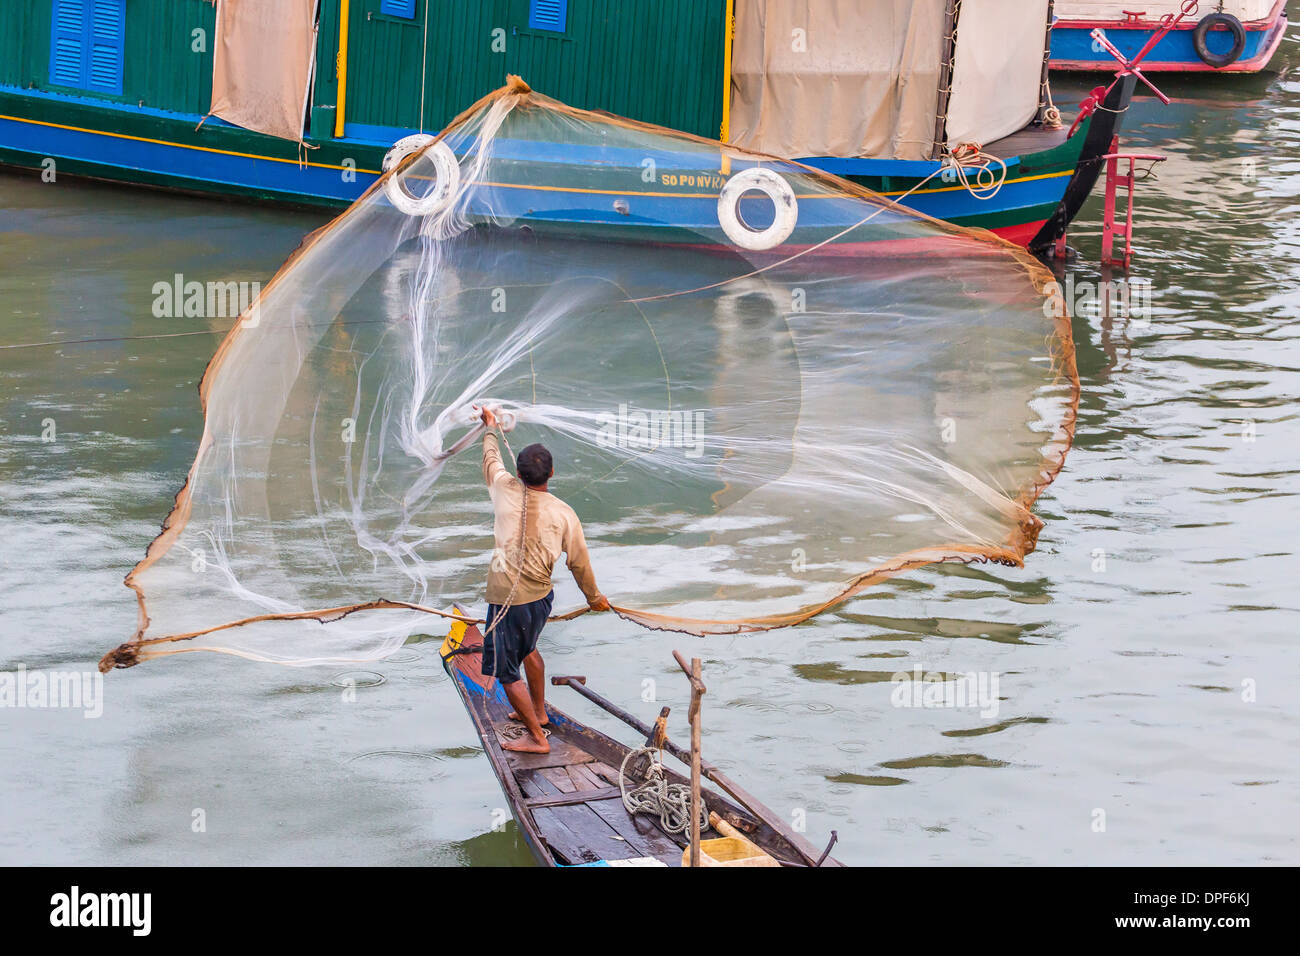 Fisherman casting net lungo il fiume Mekong nella capitale Phnom Penh, Cambogia, Indocina, Asia sud-orientale, Asia Foto Stock